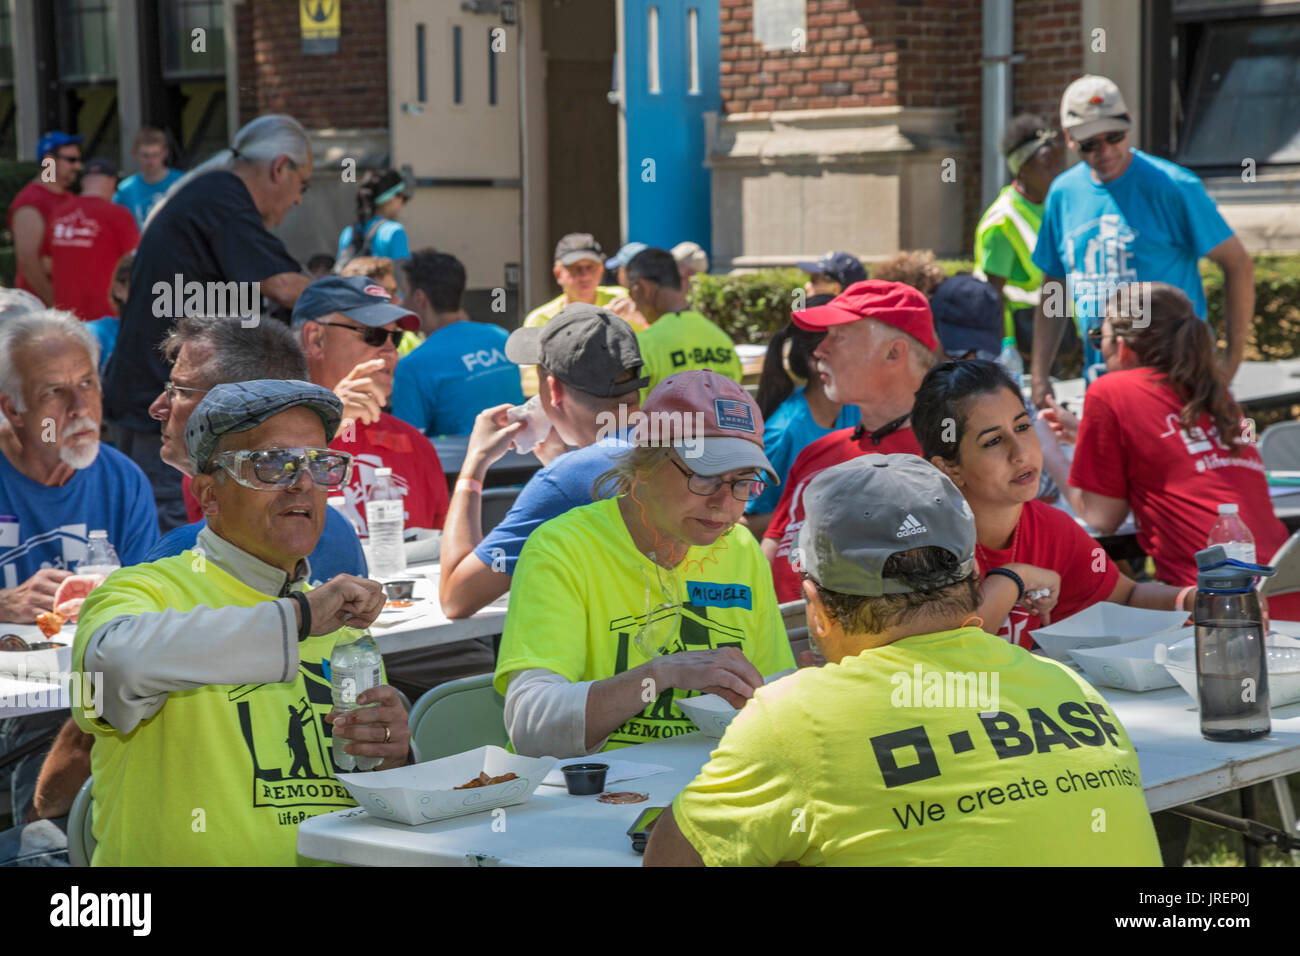 Detroit, Michigan - Freiwilligen Mittagessen essen während ein Jährliches Verbesserungsprojekt, das Leben genannt wird umgebaut. Jedes Jahr, das Projekt arbeitet zu verbessern. Stockfoto